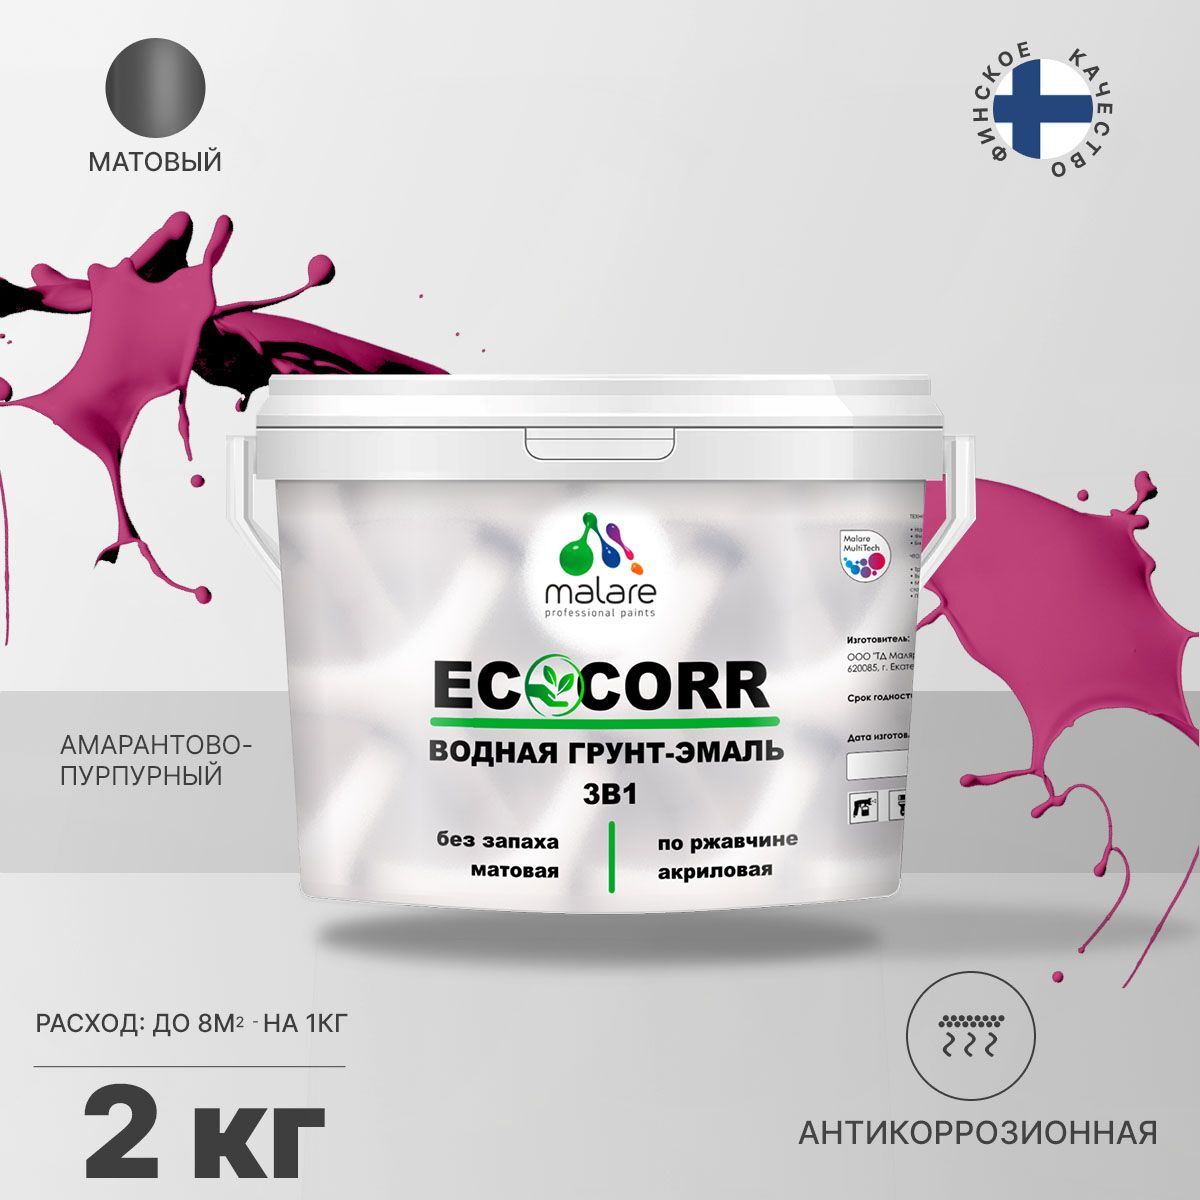 Грунт-эмаль 3 в 1 водная Malare EcoCorr антикоррозионная Акриловая, 2 кг амарантово-пурпурный